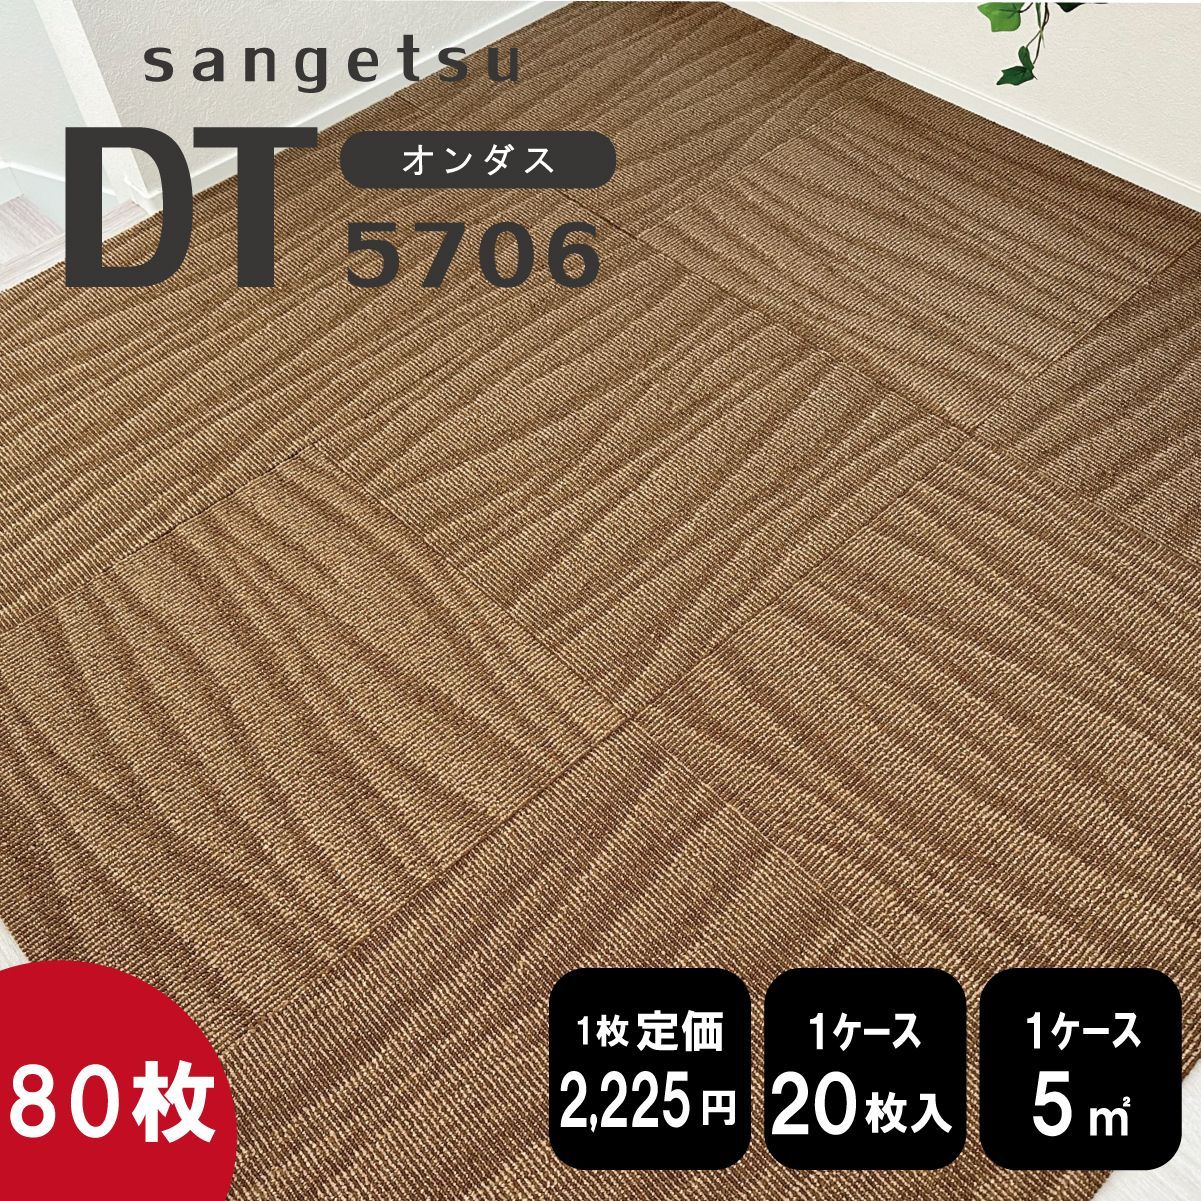 《ゲストルーム》 サンゲツ タイルカーペット【濃ベージュ】【80枚】DT5706